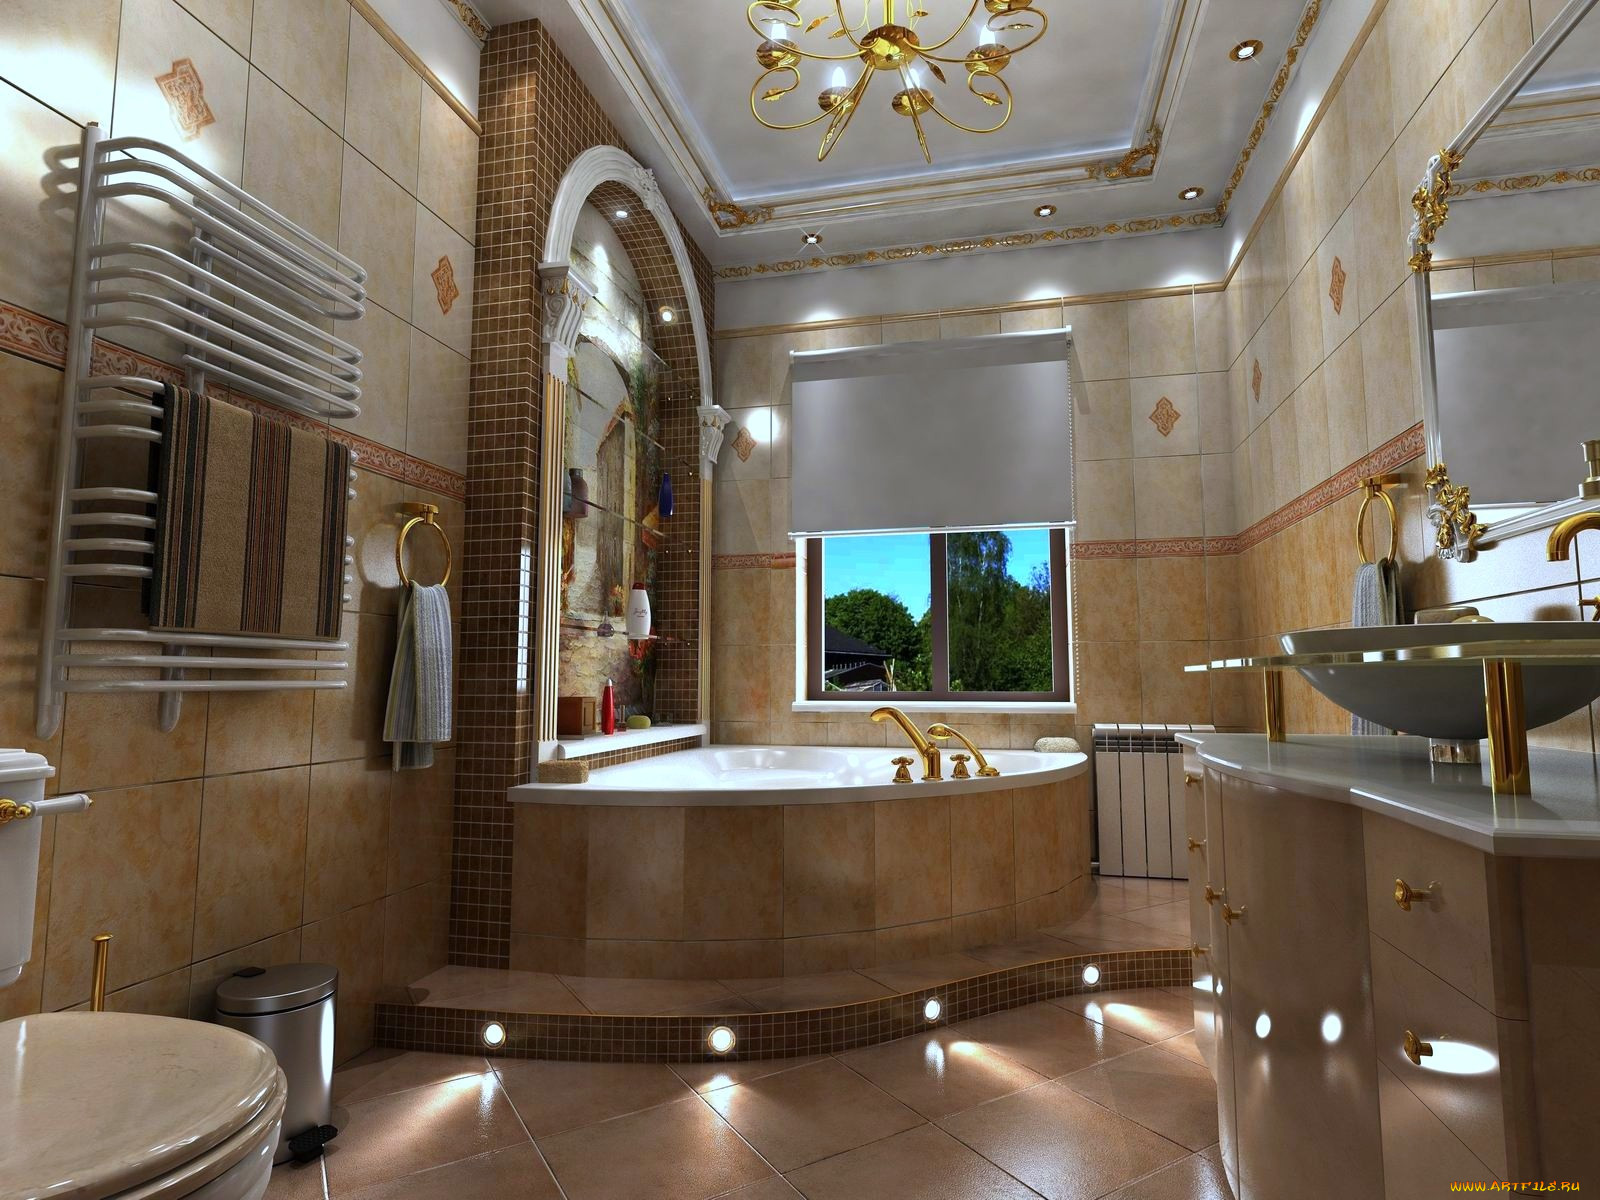 Ванная комната шире ванны. Ванная комната. Красивая ванная комната. Шикарные Ванные комнаты. Интерьер ванной комнаты.